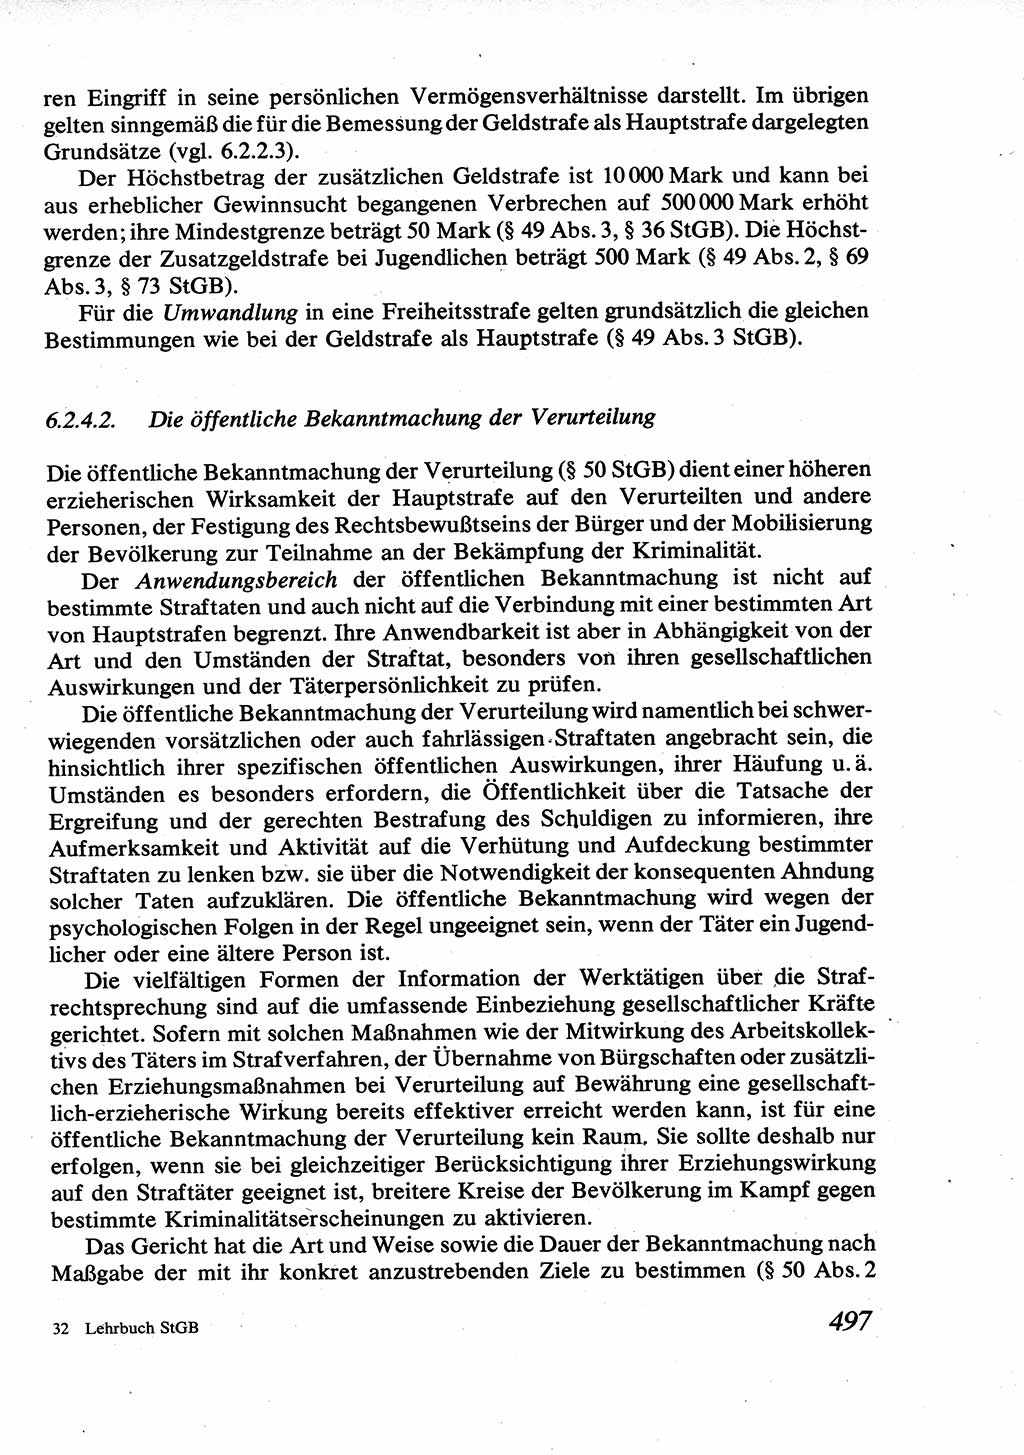 Strafrecht [Deutsche Demokratische Republik (DDR)], Allgemeiner Teil, Lehrbuch 1976, Seite 497 (Strafr. DDR AT Lb. 1976, S. 497)